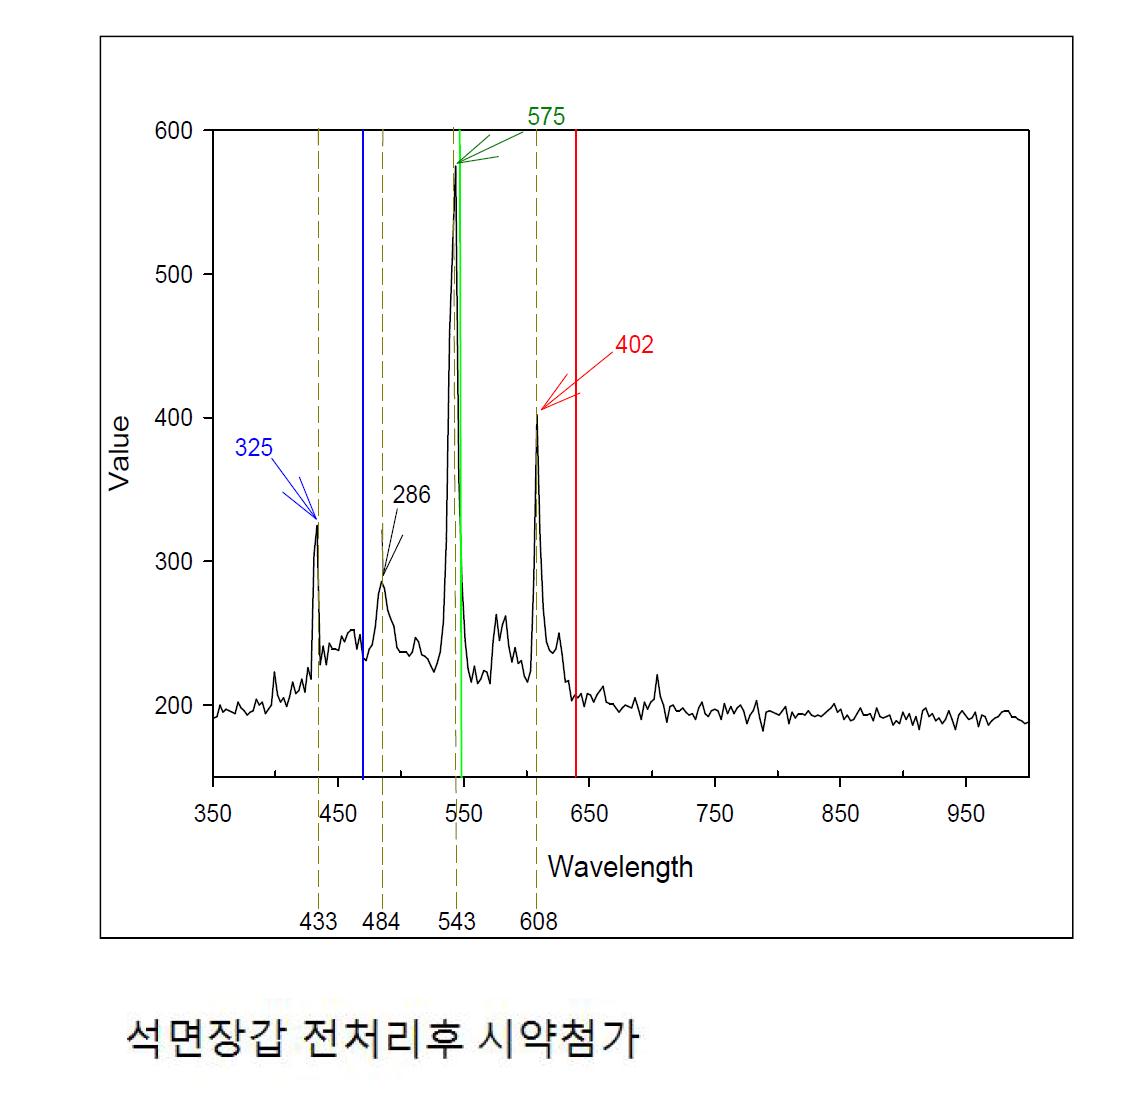 삼파장 광원과 필터 사용 광원의 스펙트럼 비교